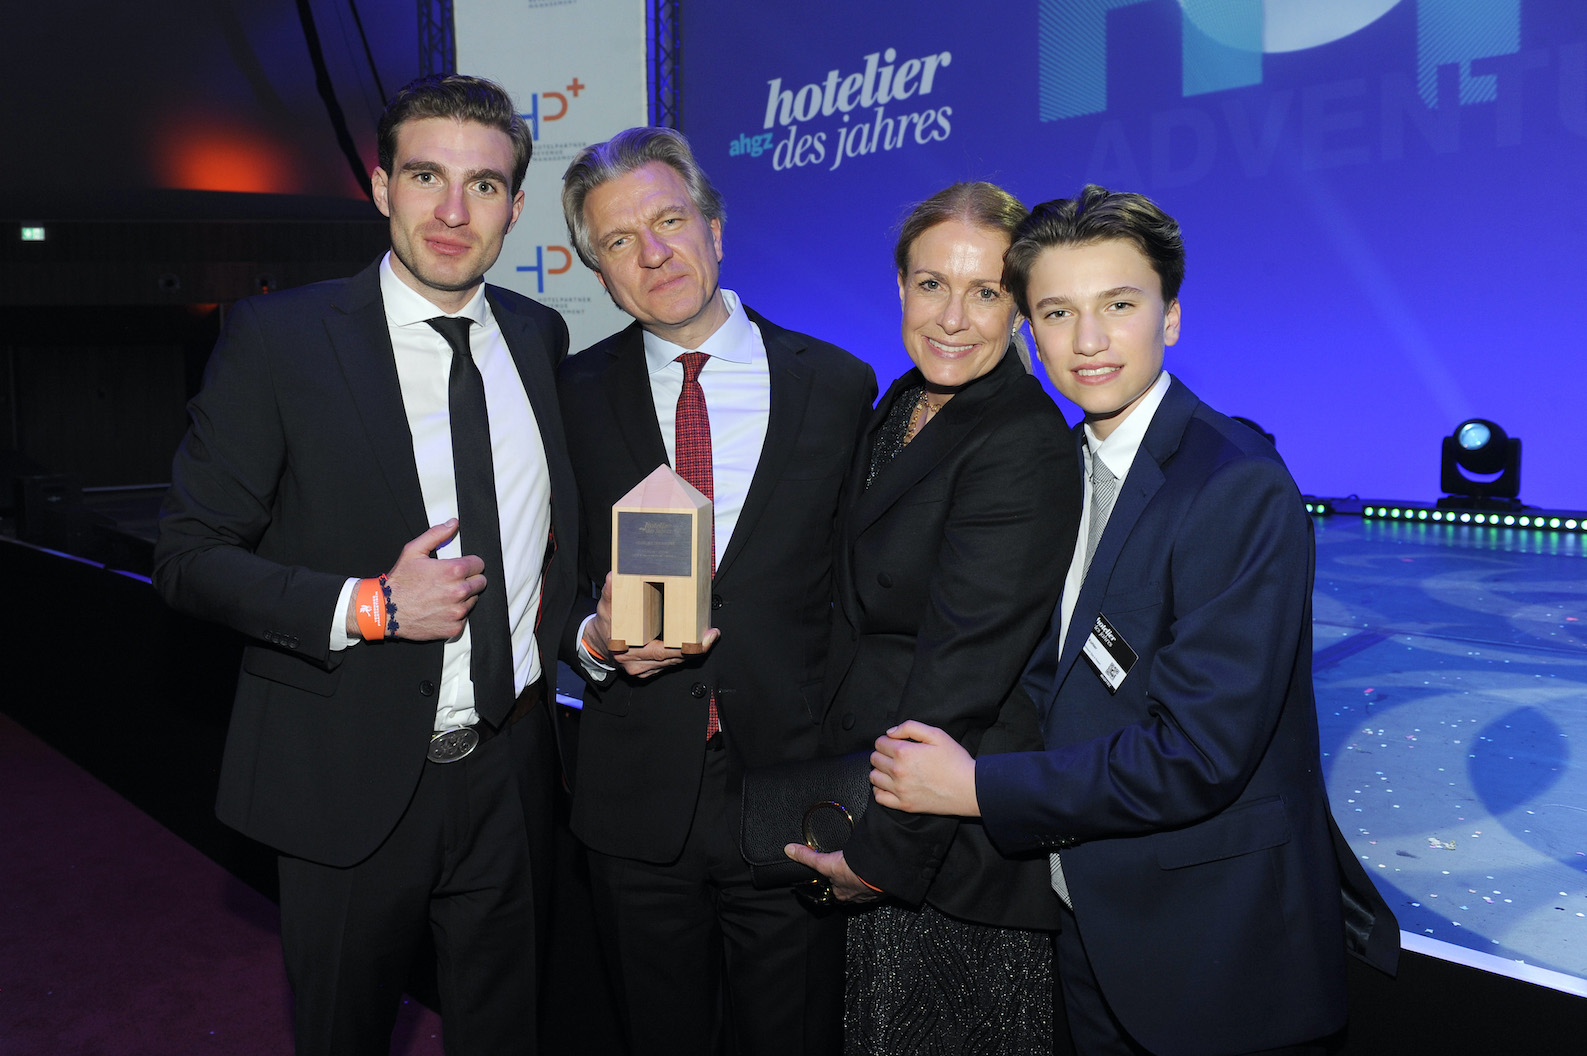 Unternehmer Korbinian Kohler ausgezeichnet als "Hotelier des Jahres"